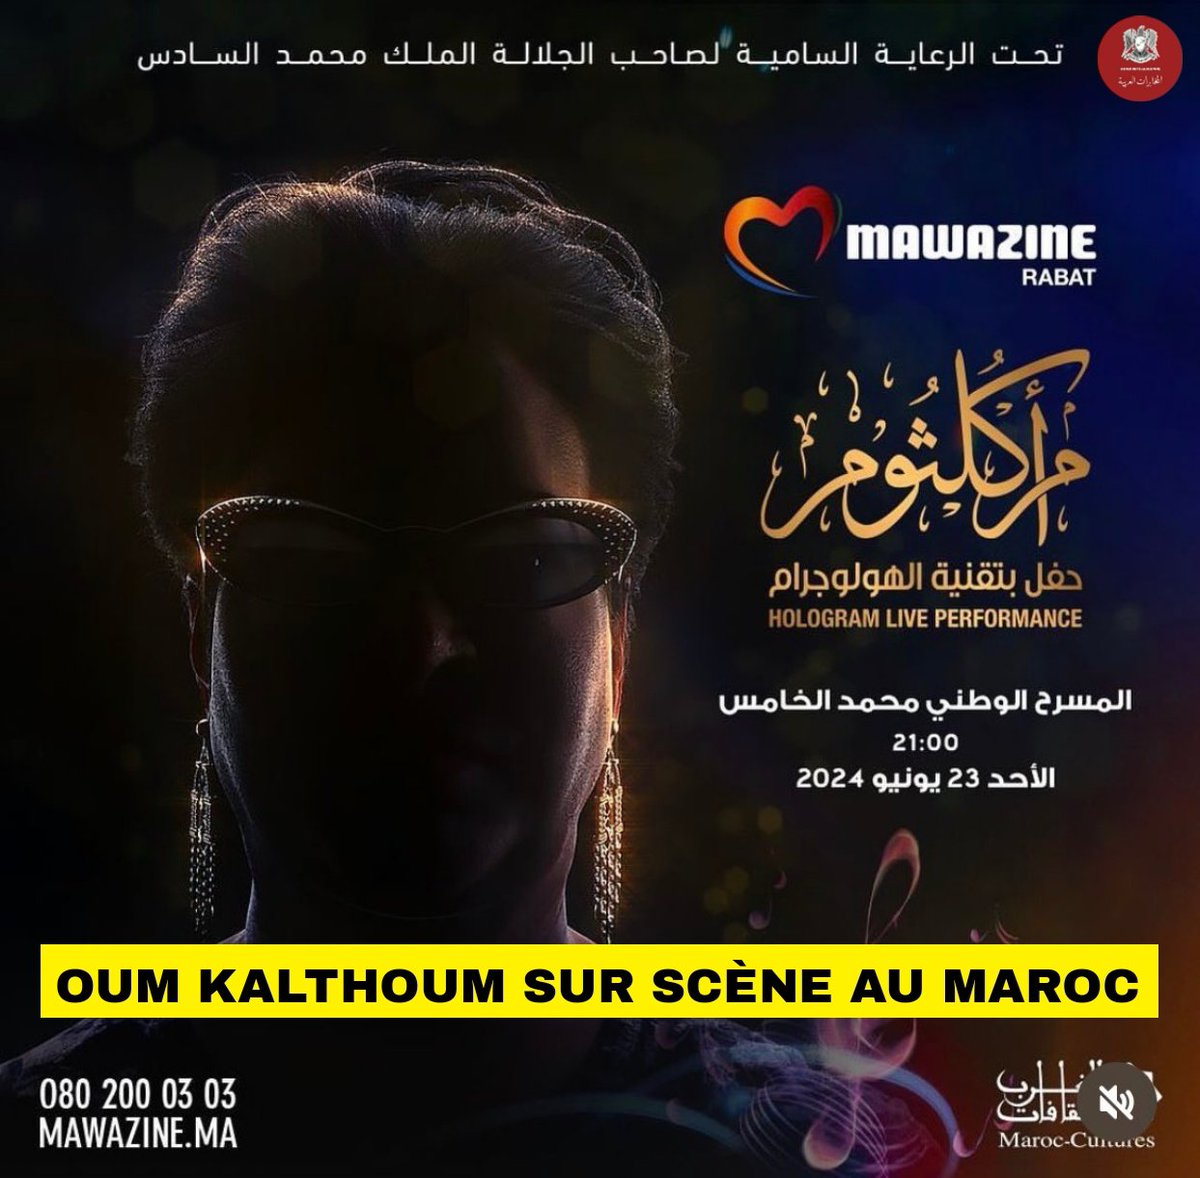 La quatrième pyramide d'Égypte, Oum Kalthoum, sera sur scène au #Maroc !

Elle resuicitera sous la forme d'un hologramme au festival Mawazine.

Un événement à ne pas rater !